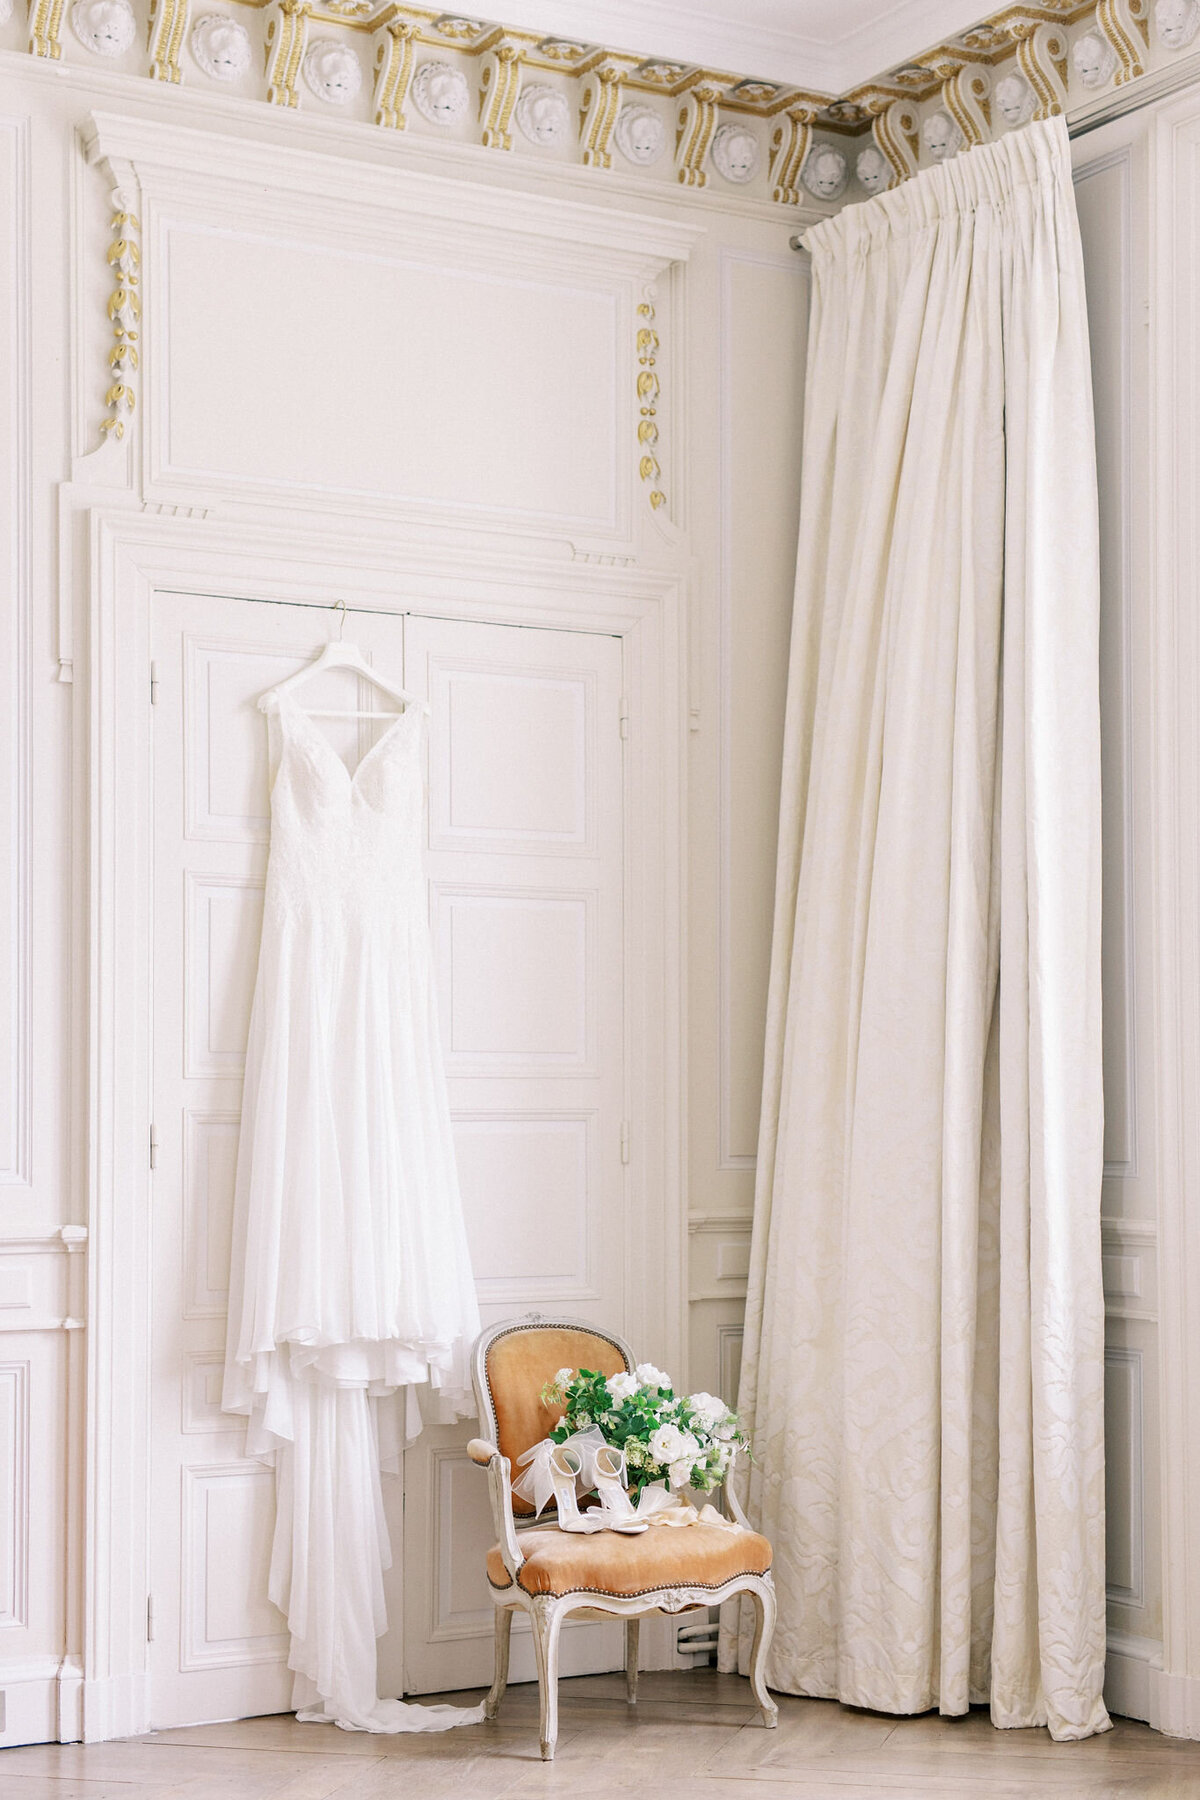 MailysFortunePhotography_PaigelewisMadame Wedding Designluxury-Provence-Wedding-destination - weddings026